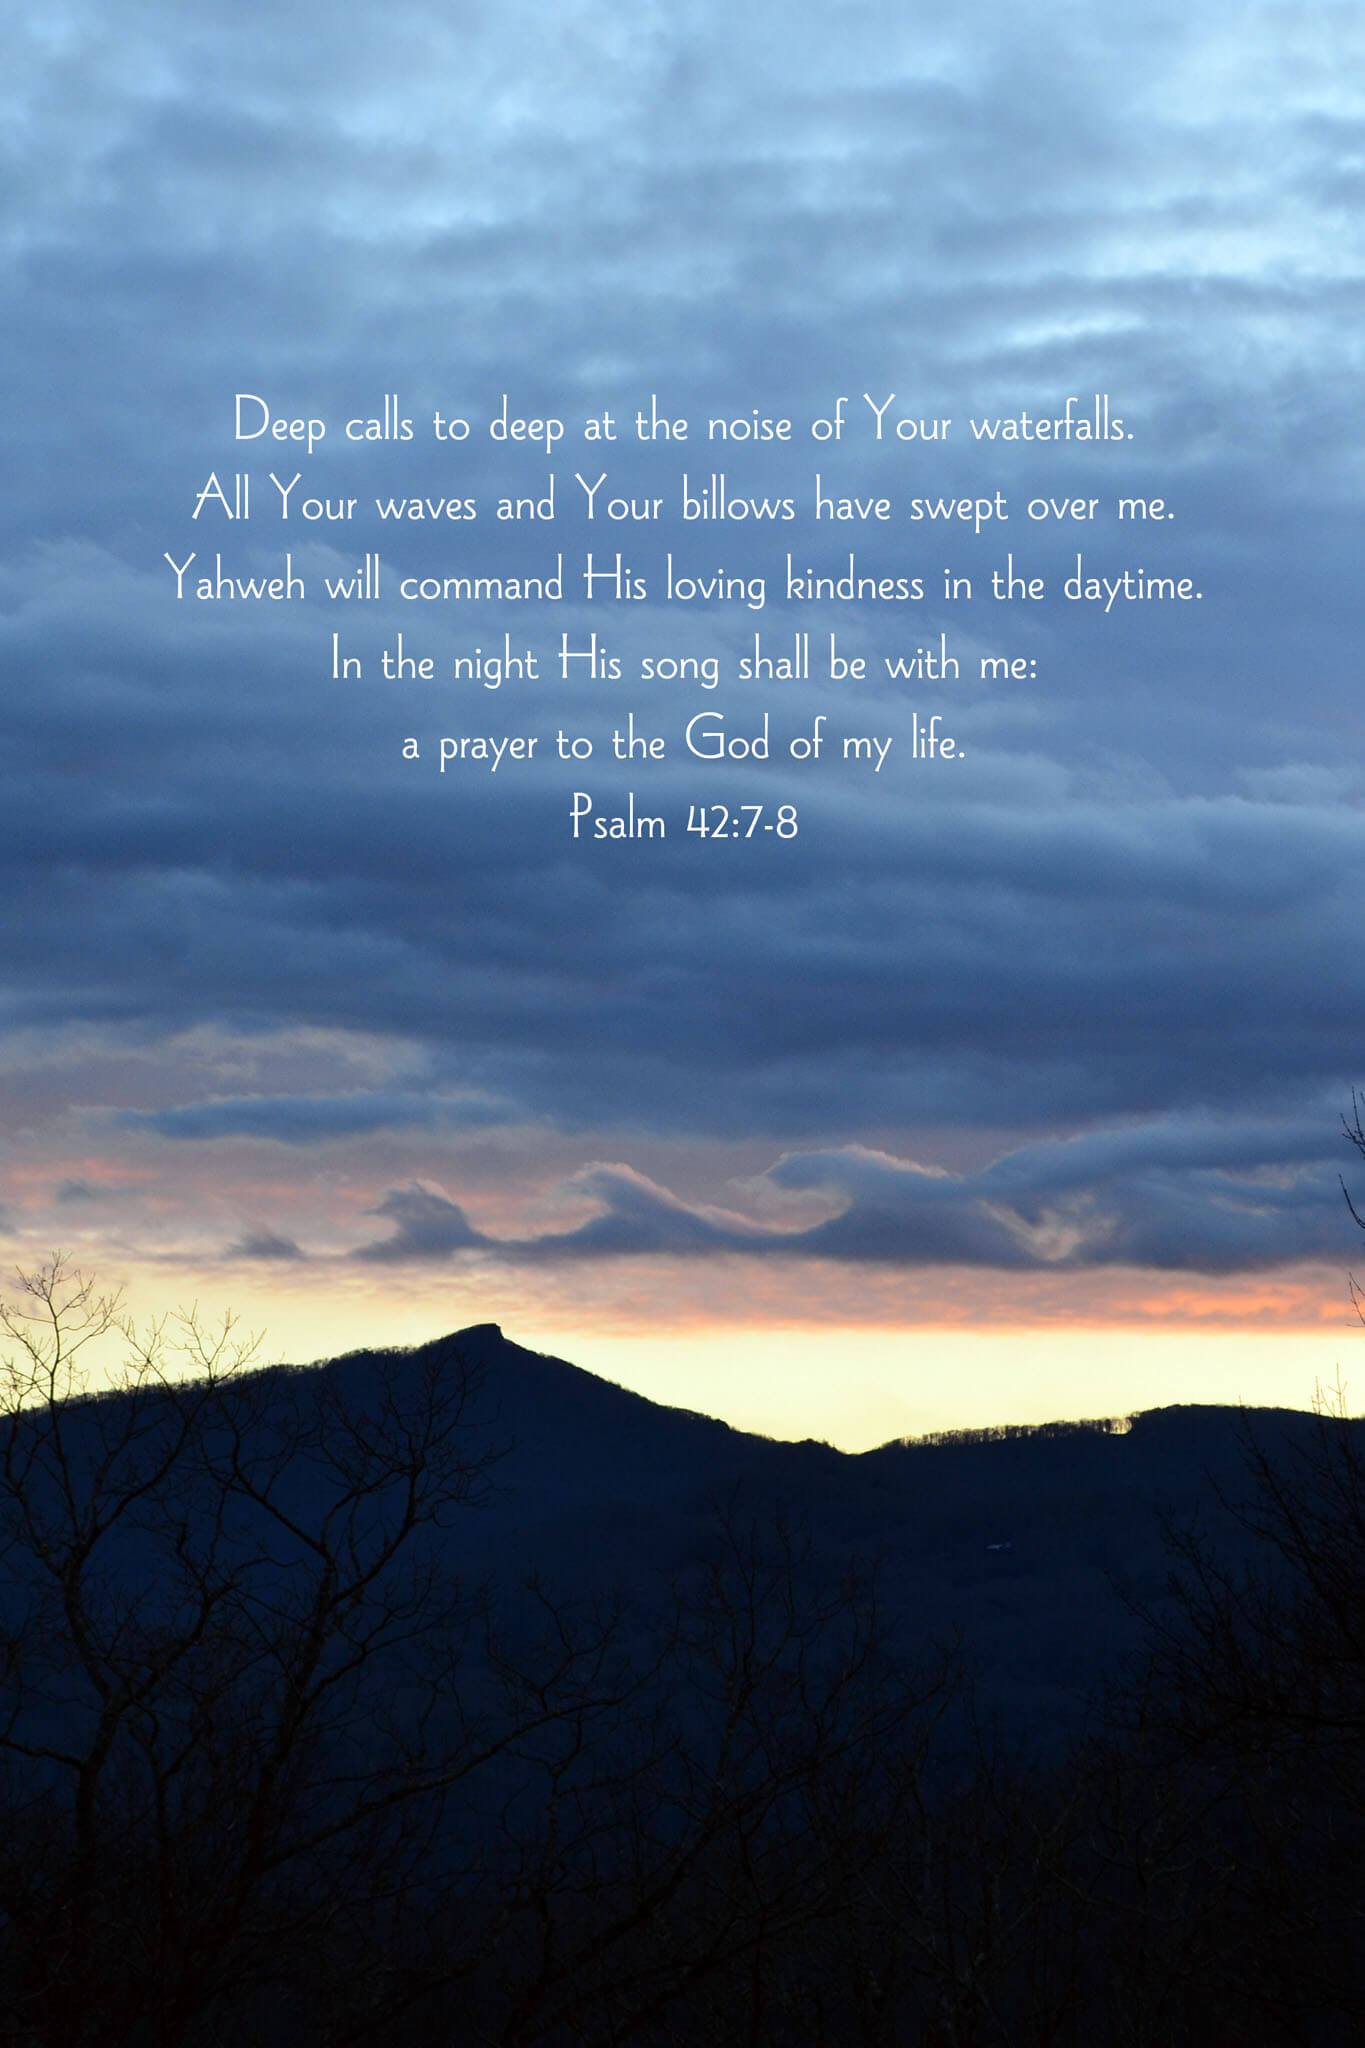 Psalm 42:7-8 Waves in Sky